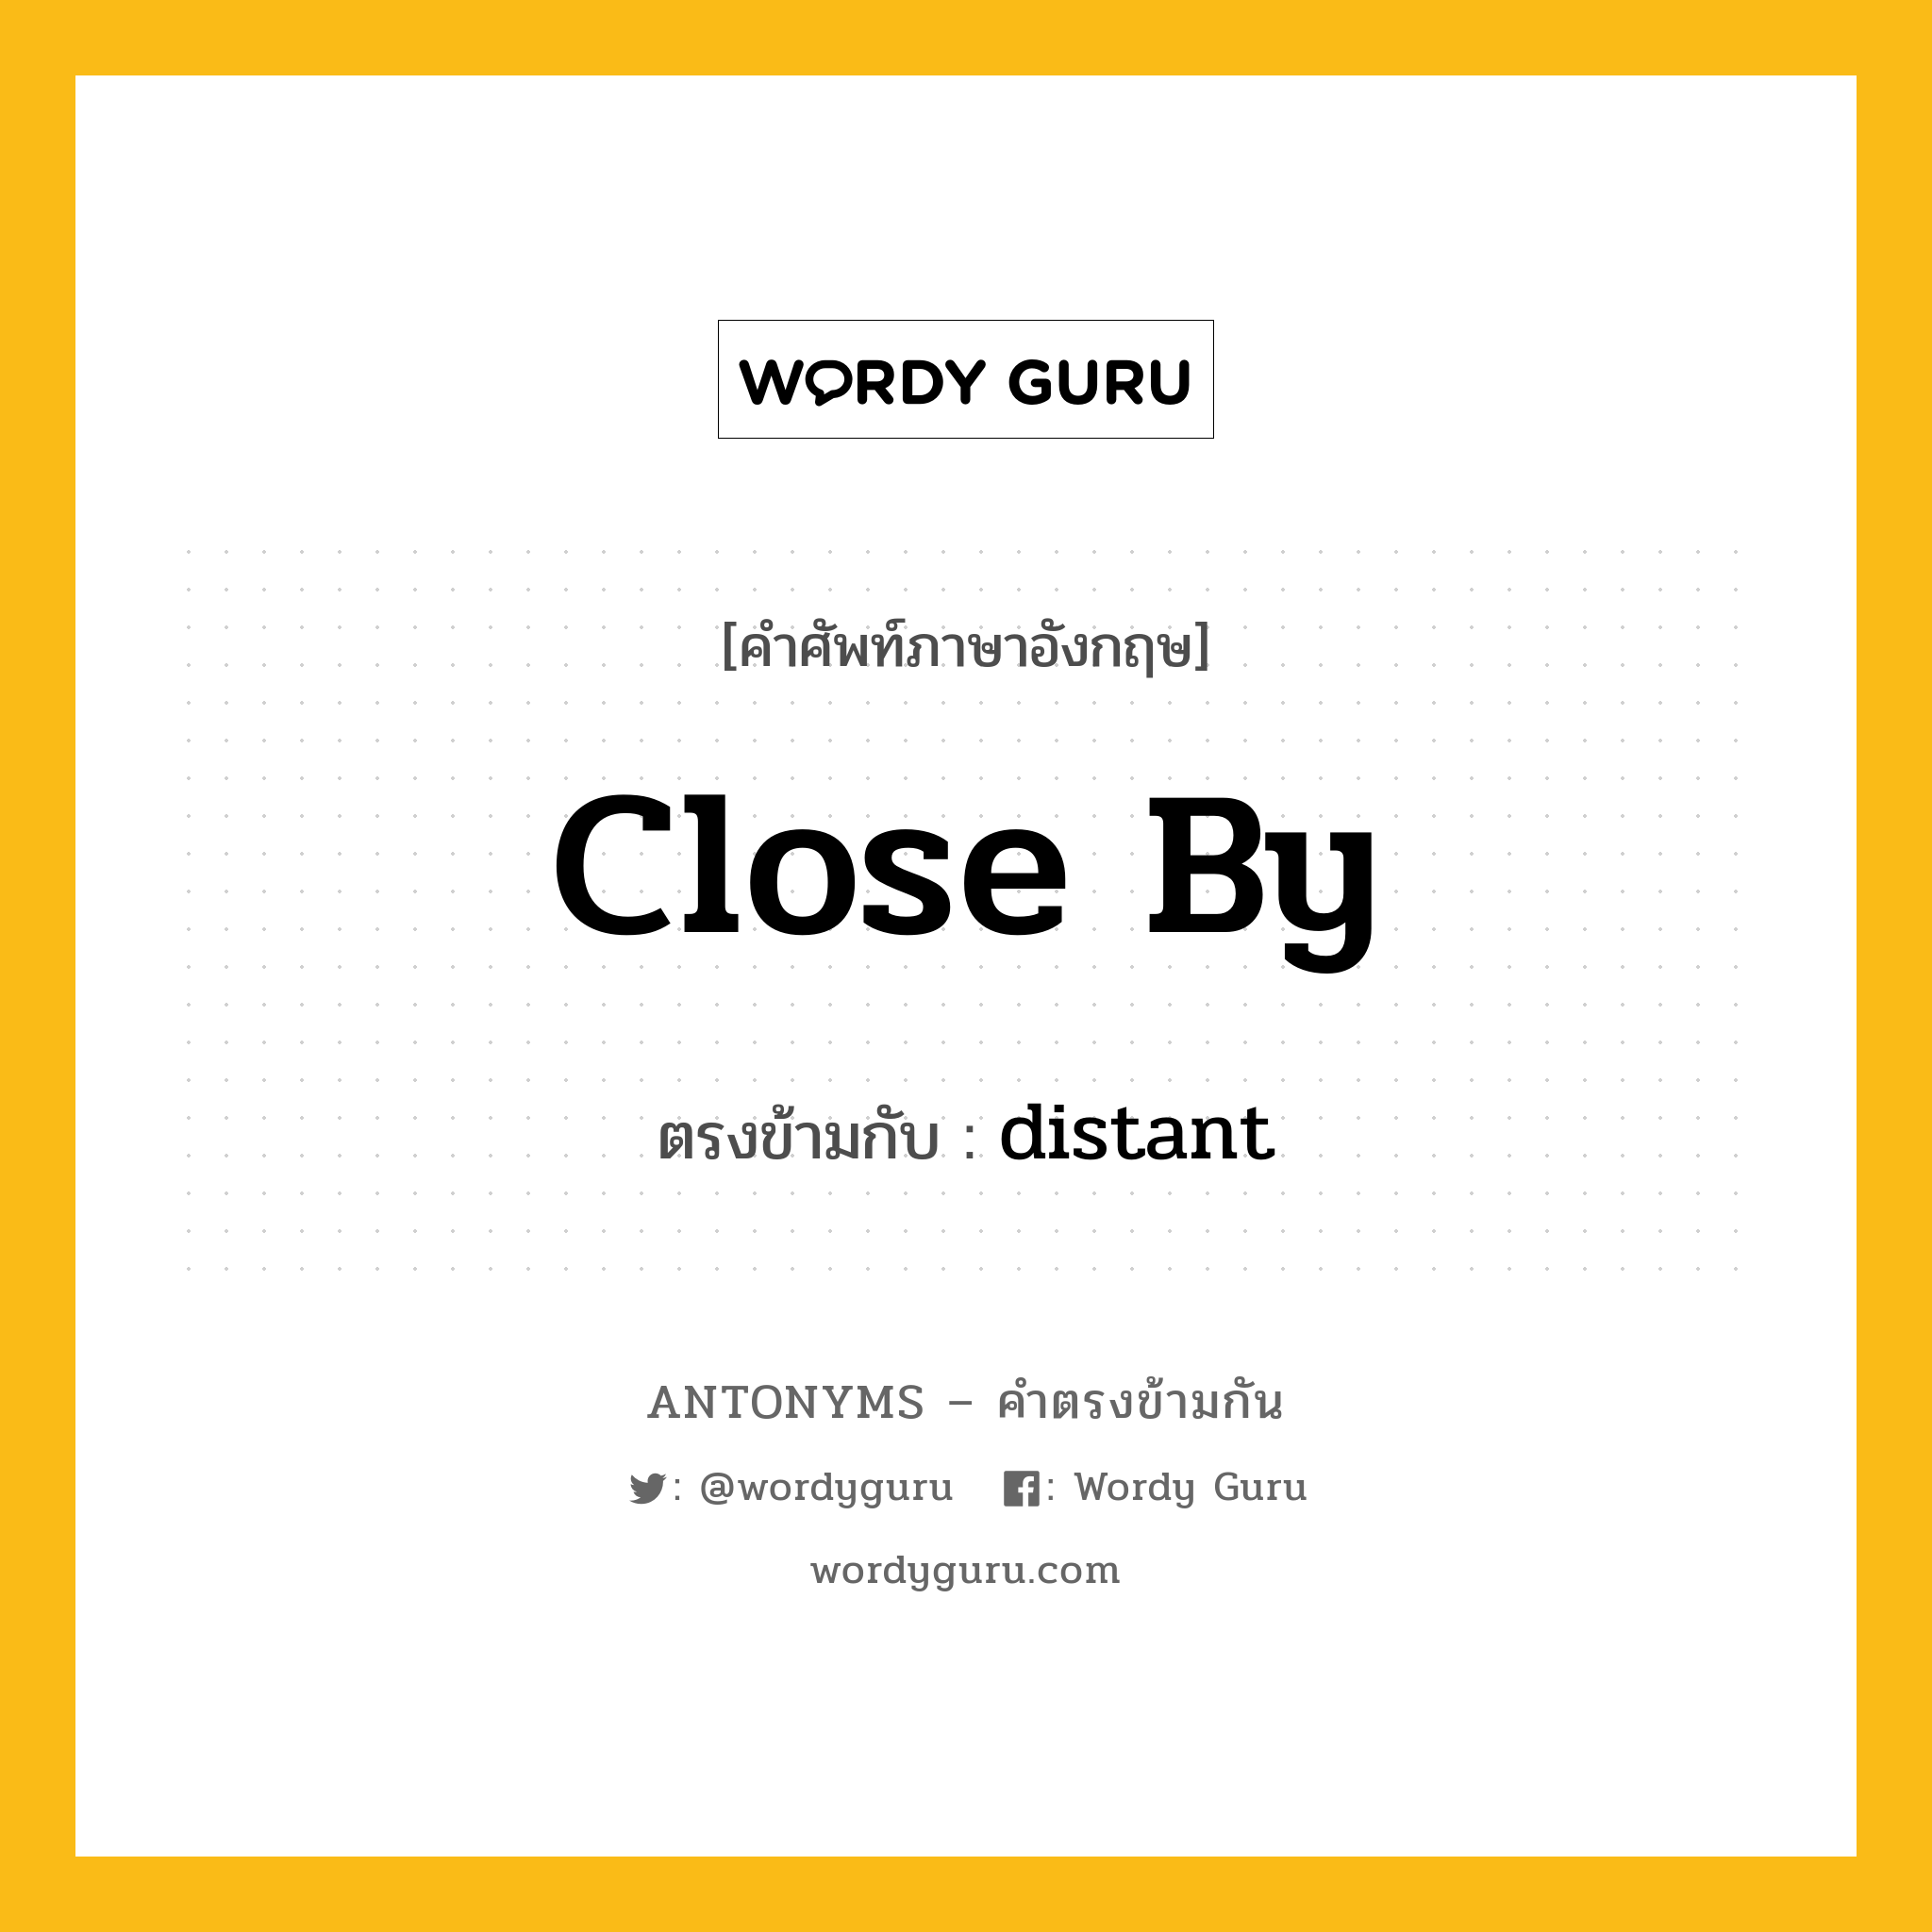 close by เป็นคำตรงข้ามกับคำไหนบ้าง?, คำศัพท์ภาษาอังกฤษ close by ตรงข้ามกับ distant หมวด distant